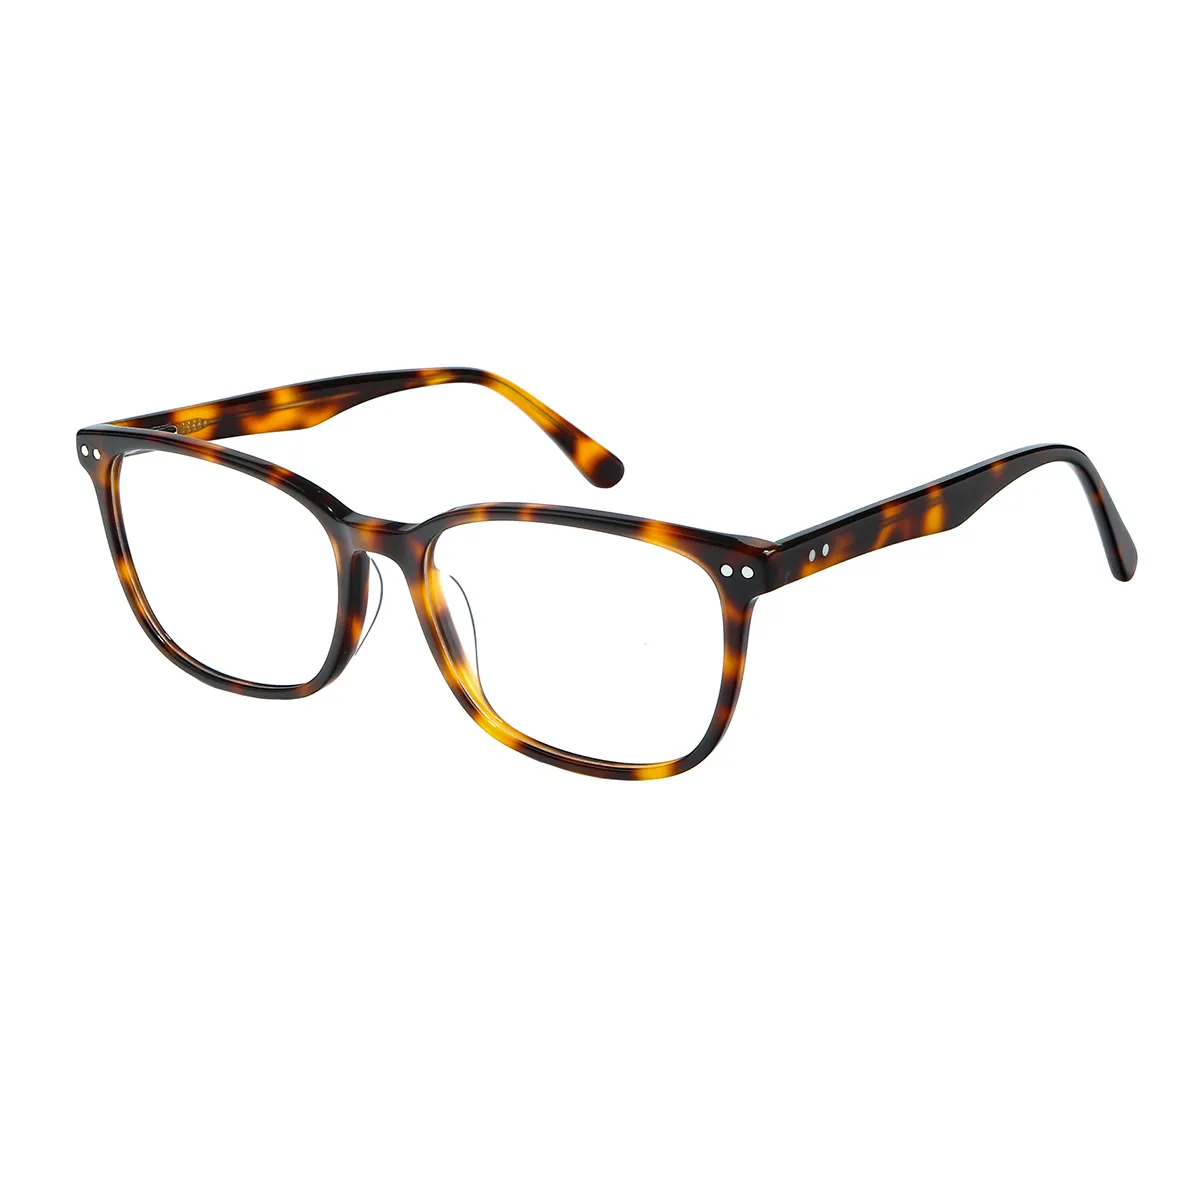 Maloney - Rectangle Tortoiseshell Glasses for Men